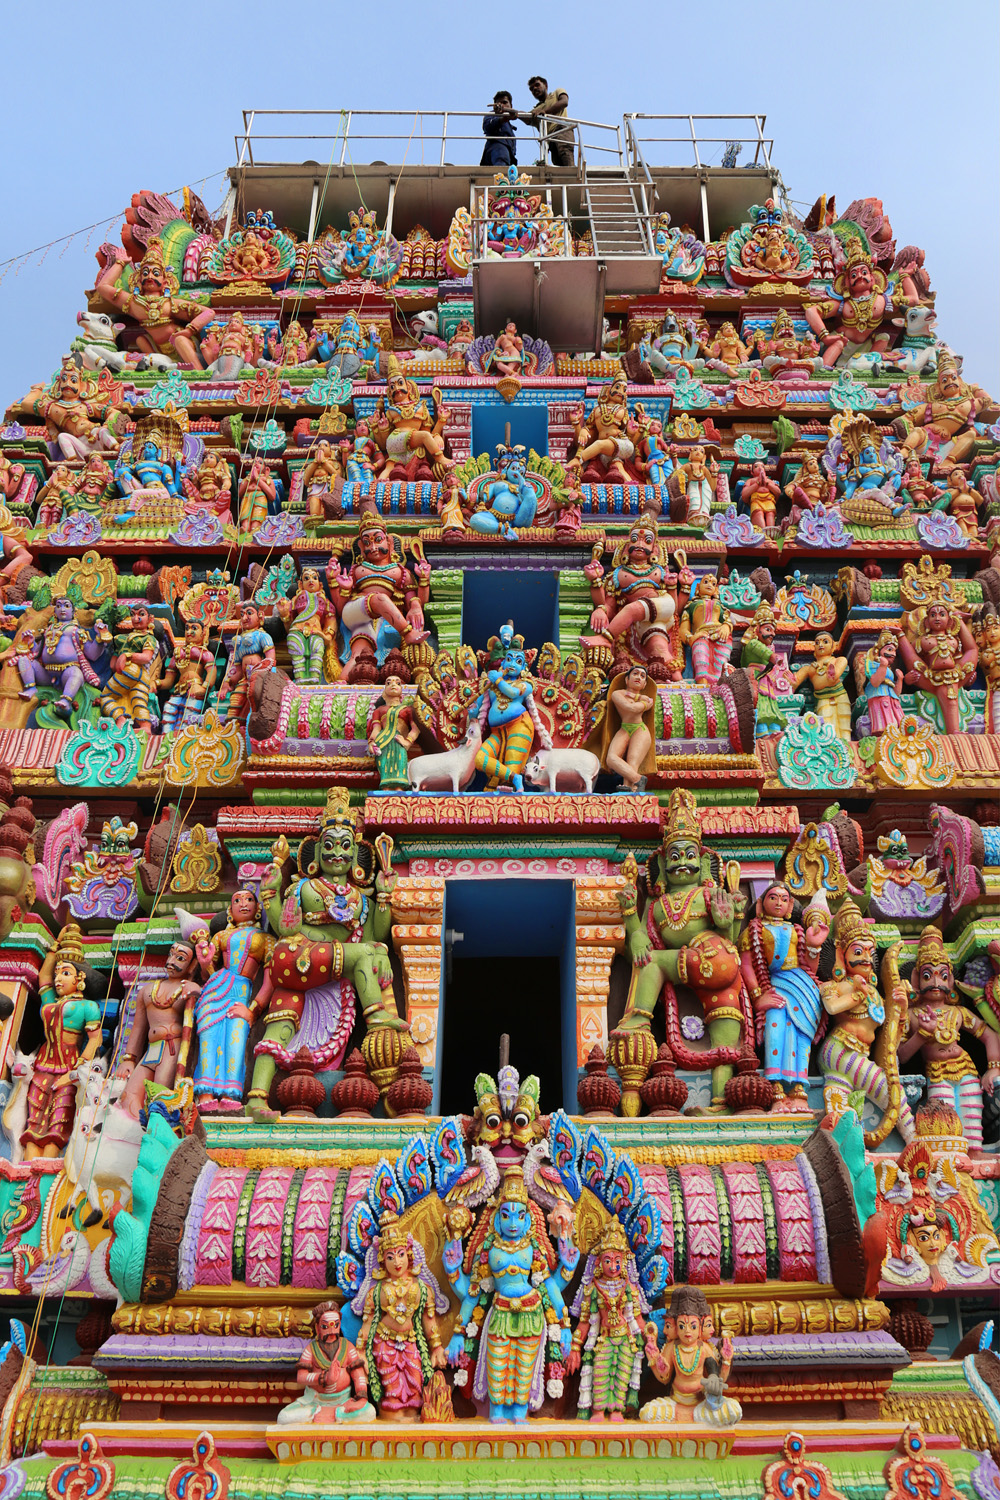 bill-hocker-vedapuheeswarar-temple-pondicherry-india-2018